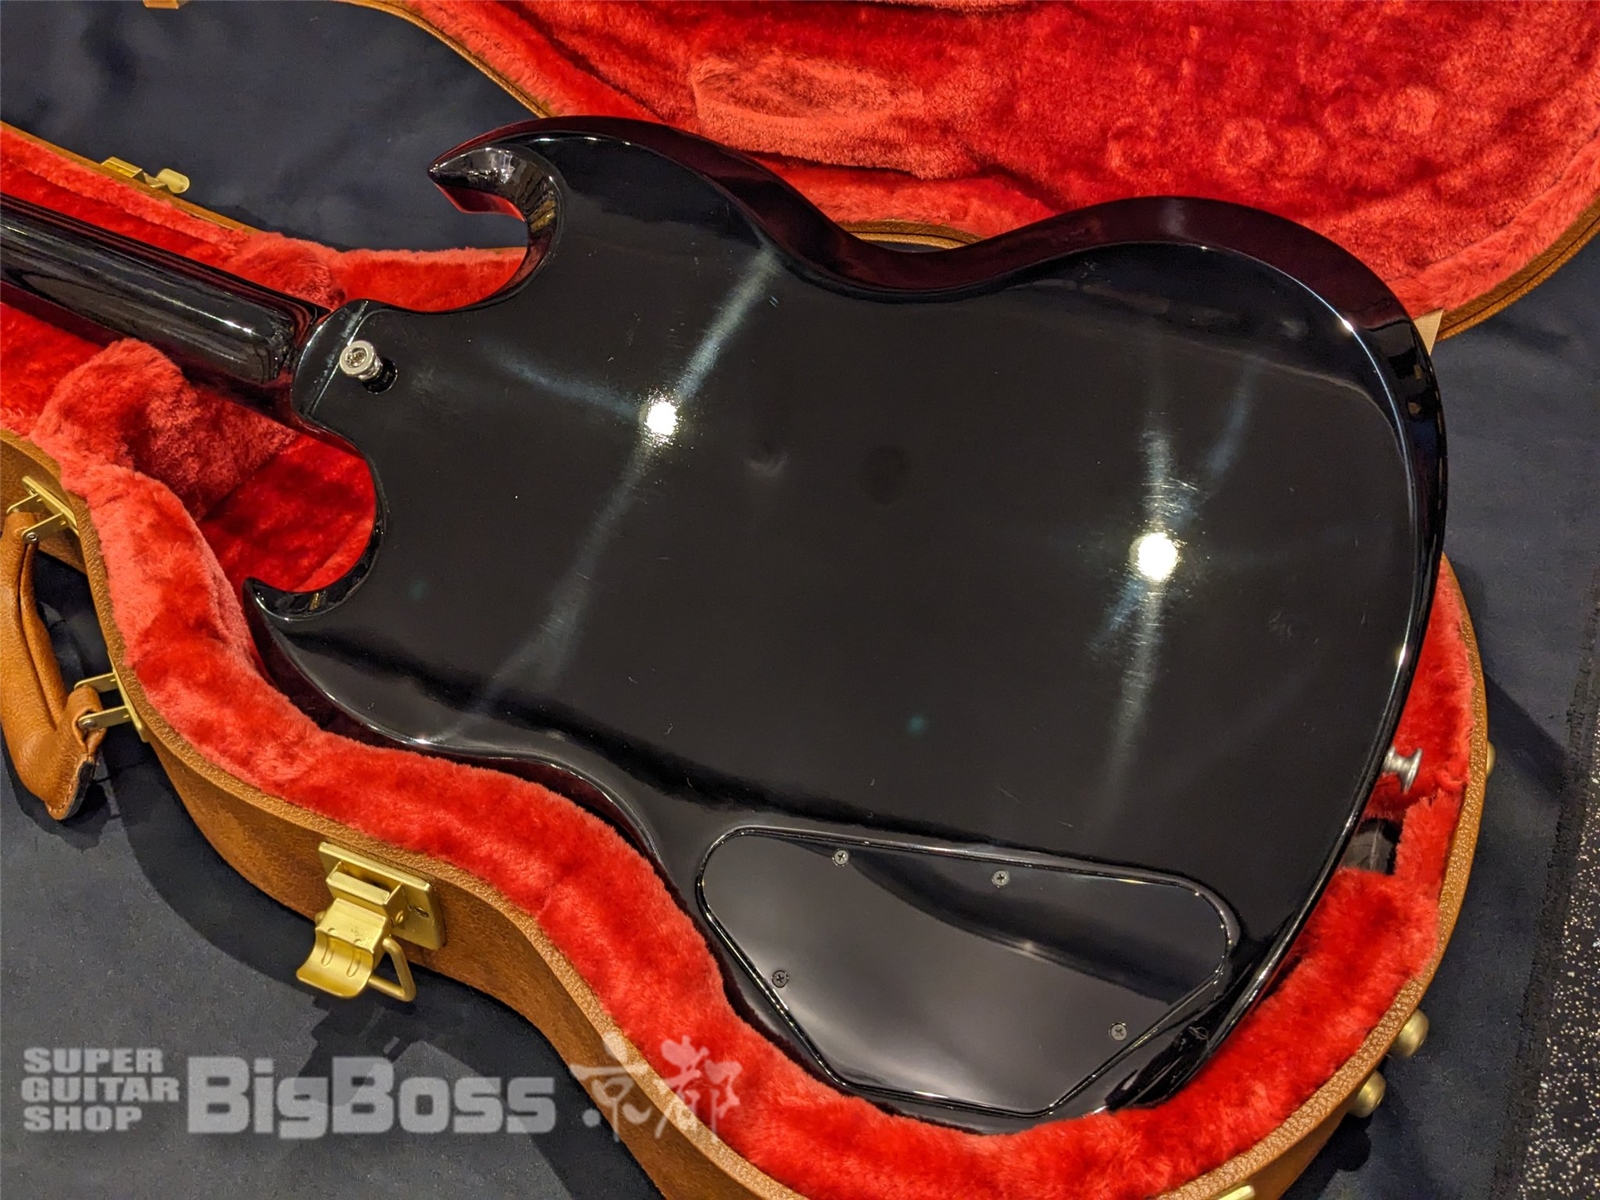 【即納可能】Gibson (ギブソン) SG Standard Bass / Ebony 京都店